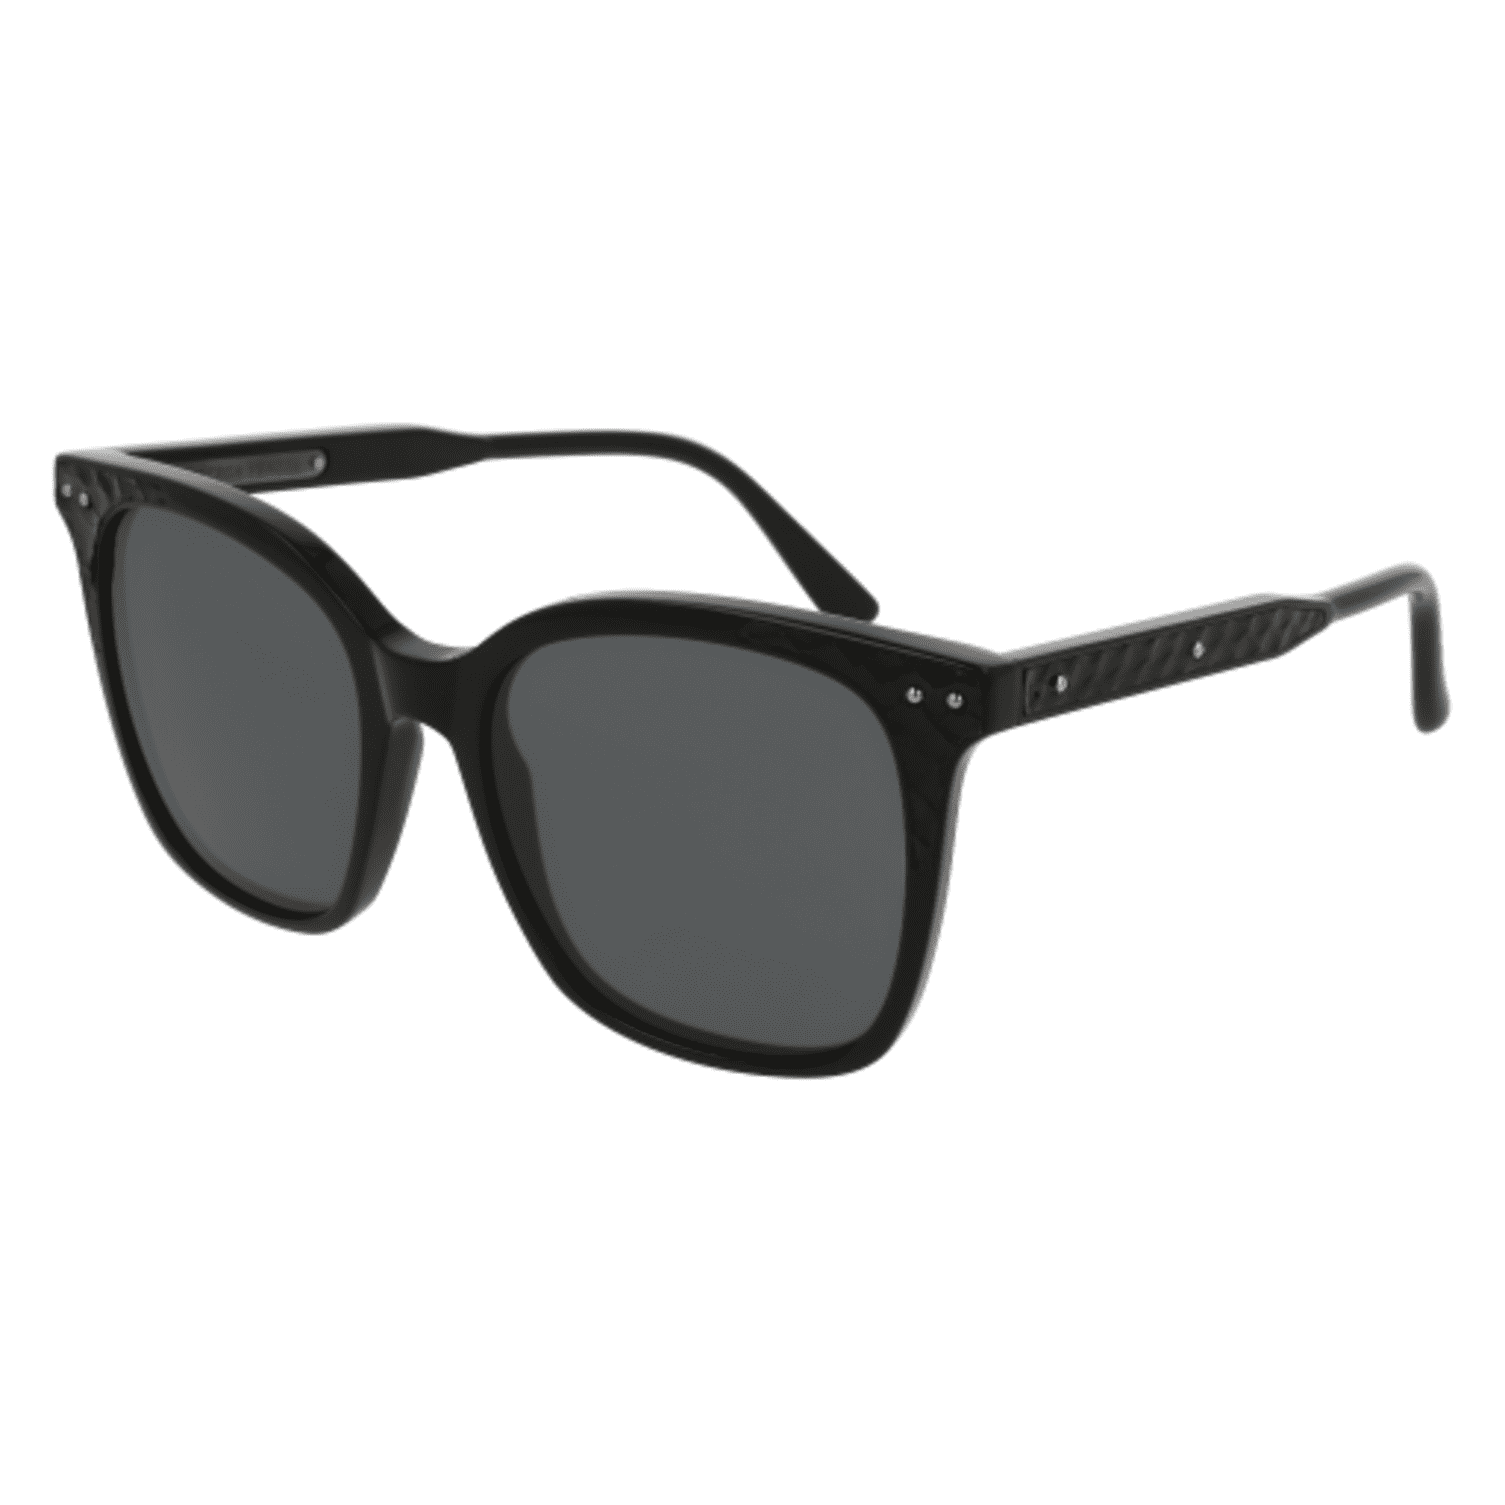 Bottega Veneta - sunglasses bottega veneta bv 0118 s- 005 black / grey